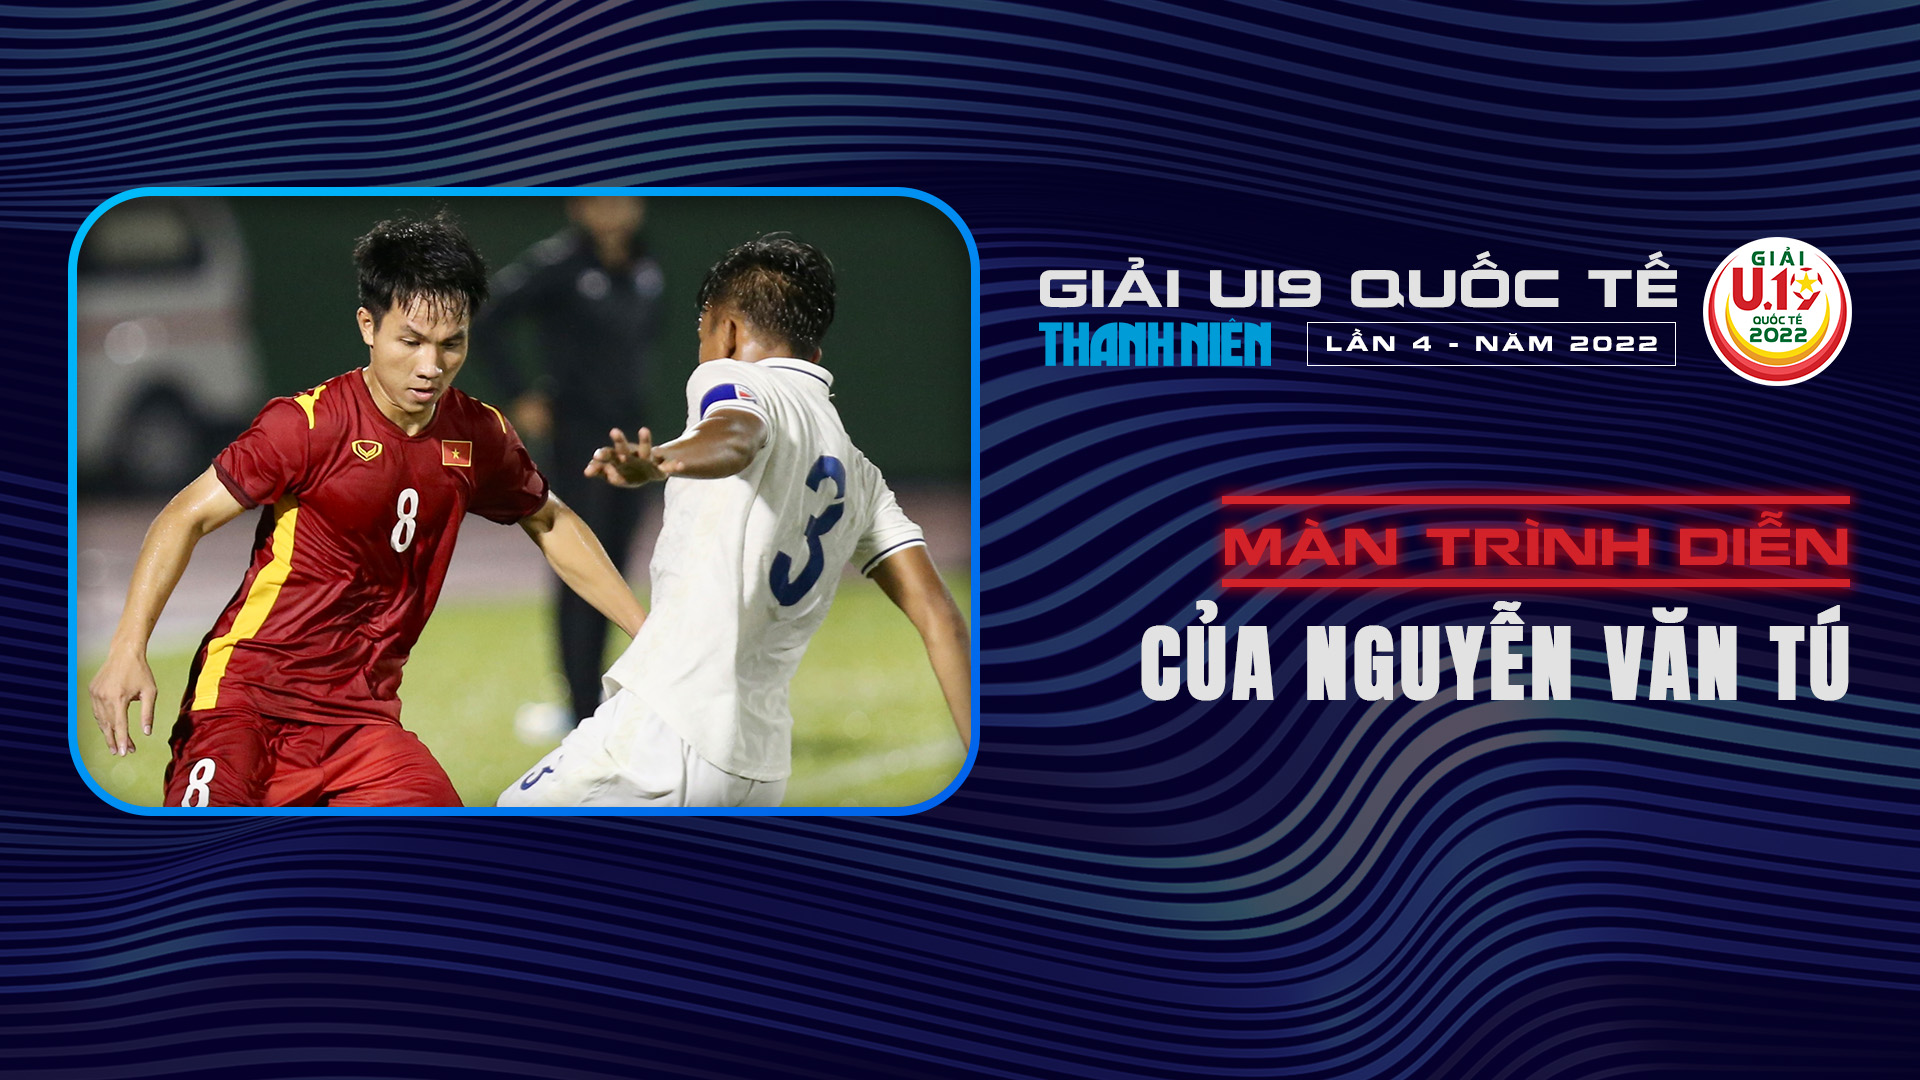 Màn trình diễn của Nguyễn Văn Tú tại U19 Quốc tế 2022 - U19 Quốc tế